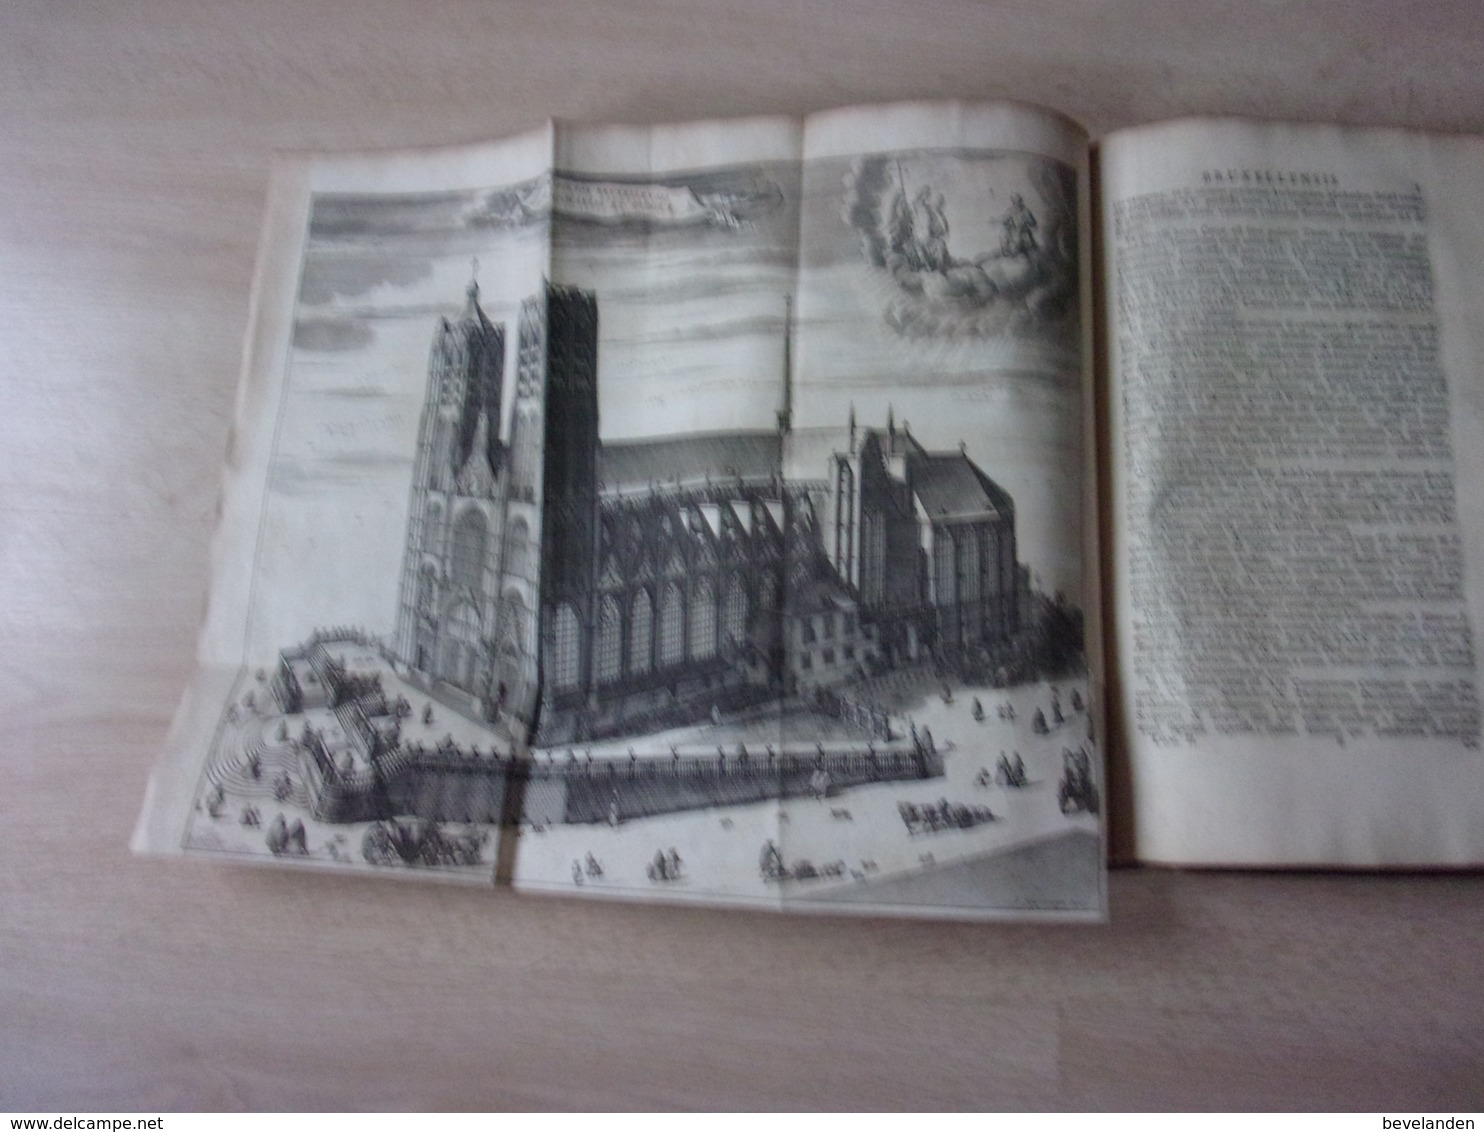 Historia sacra et profana archiepiscopatus Mechliniensis België Mechelen jr 1725